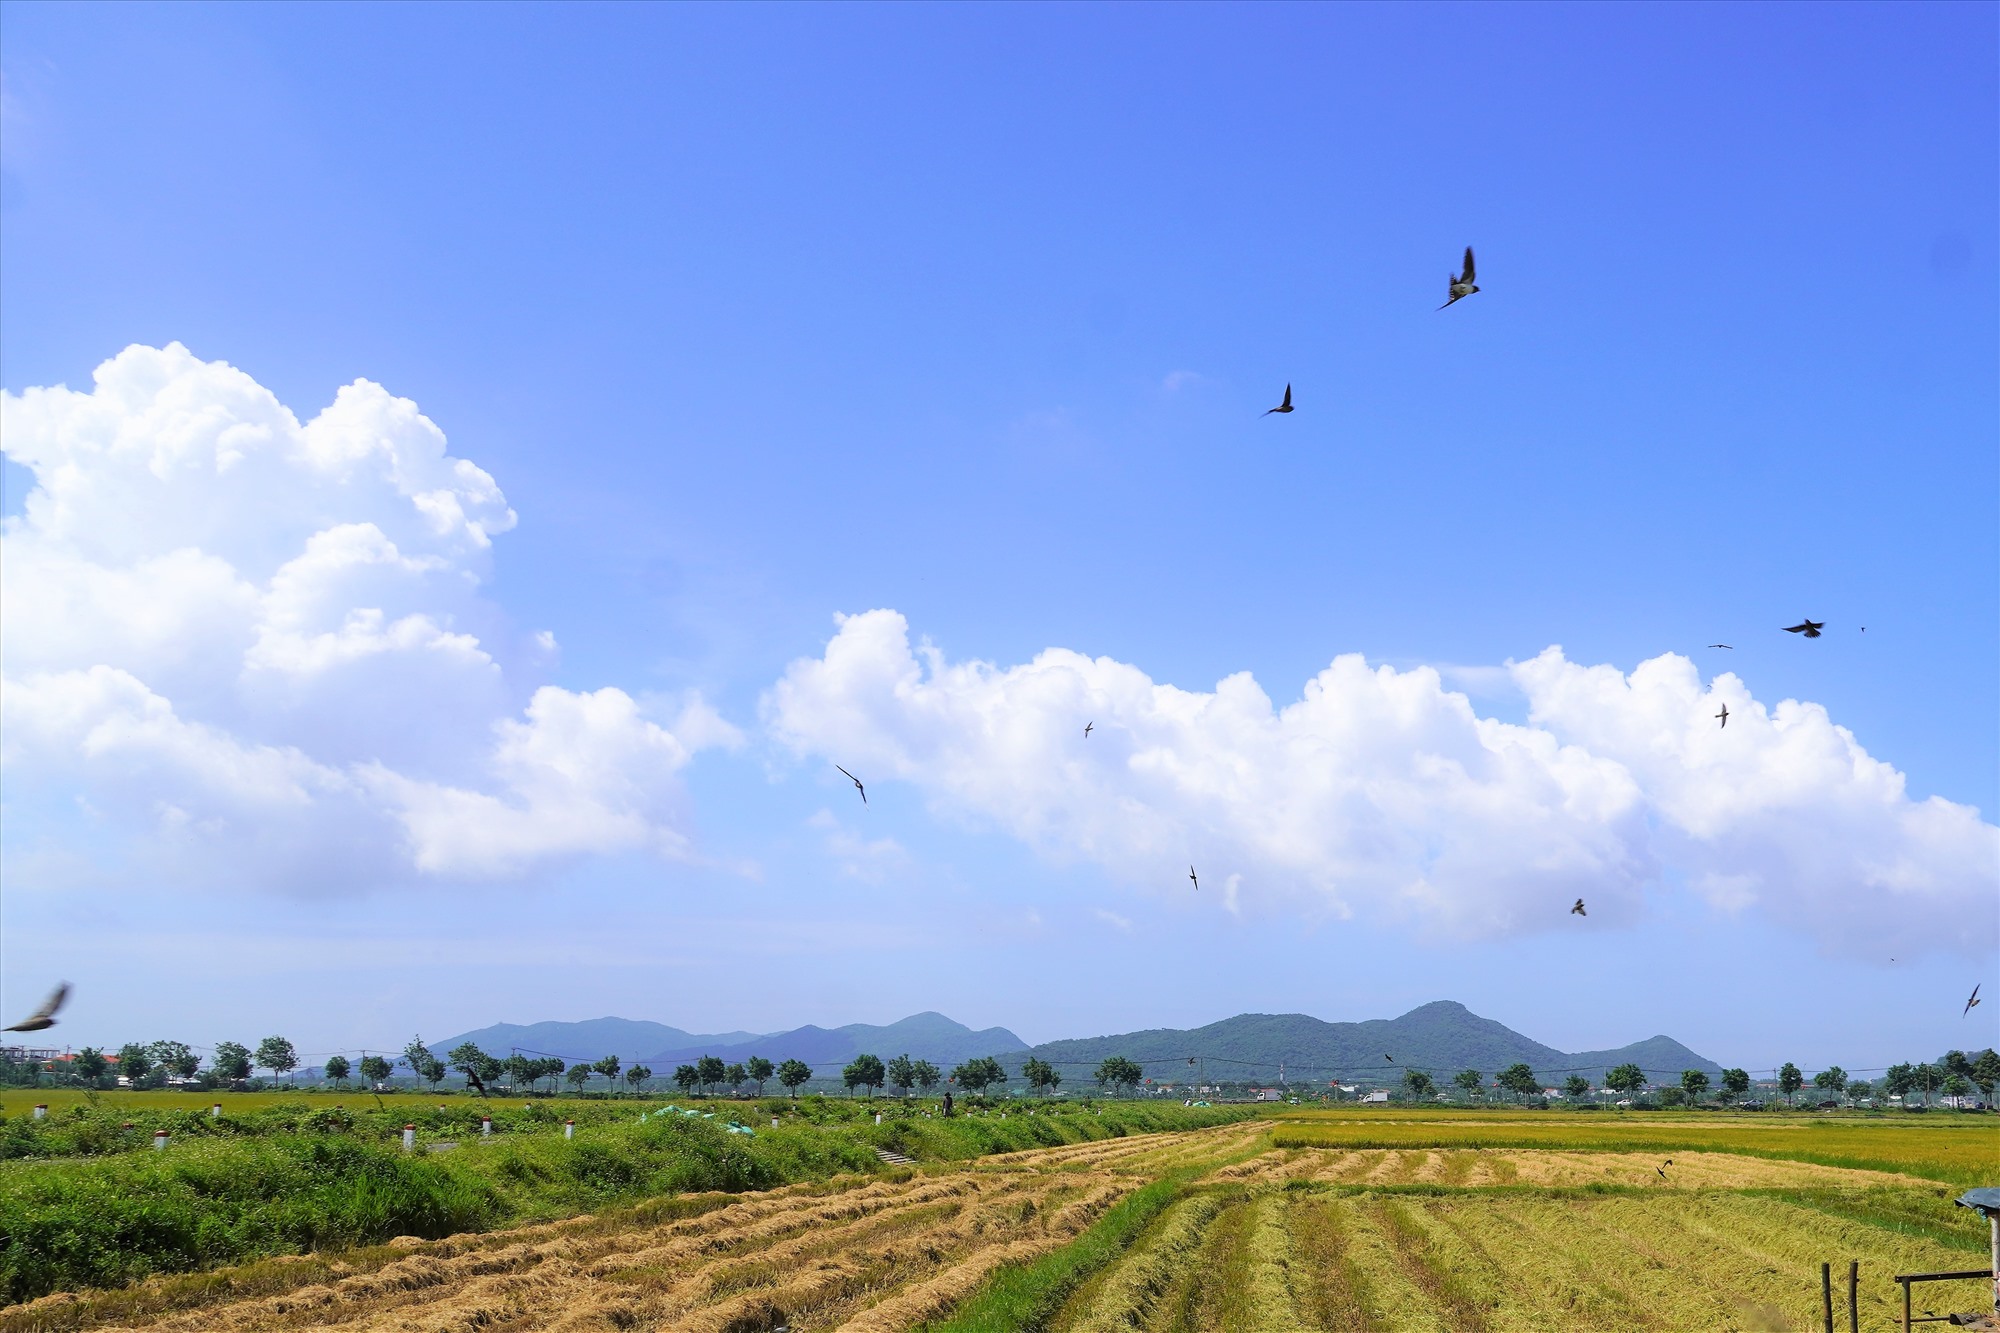 Trên những thửa ruộng gặt xong, từng đàn chim tụ tập để kiếm ăn, nhặt nhạnh những hạt rơi vãi trên đồng ruộng. Ảnh: Thành An